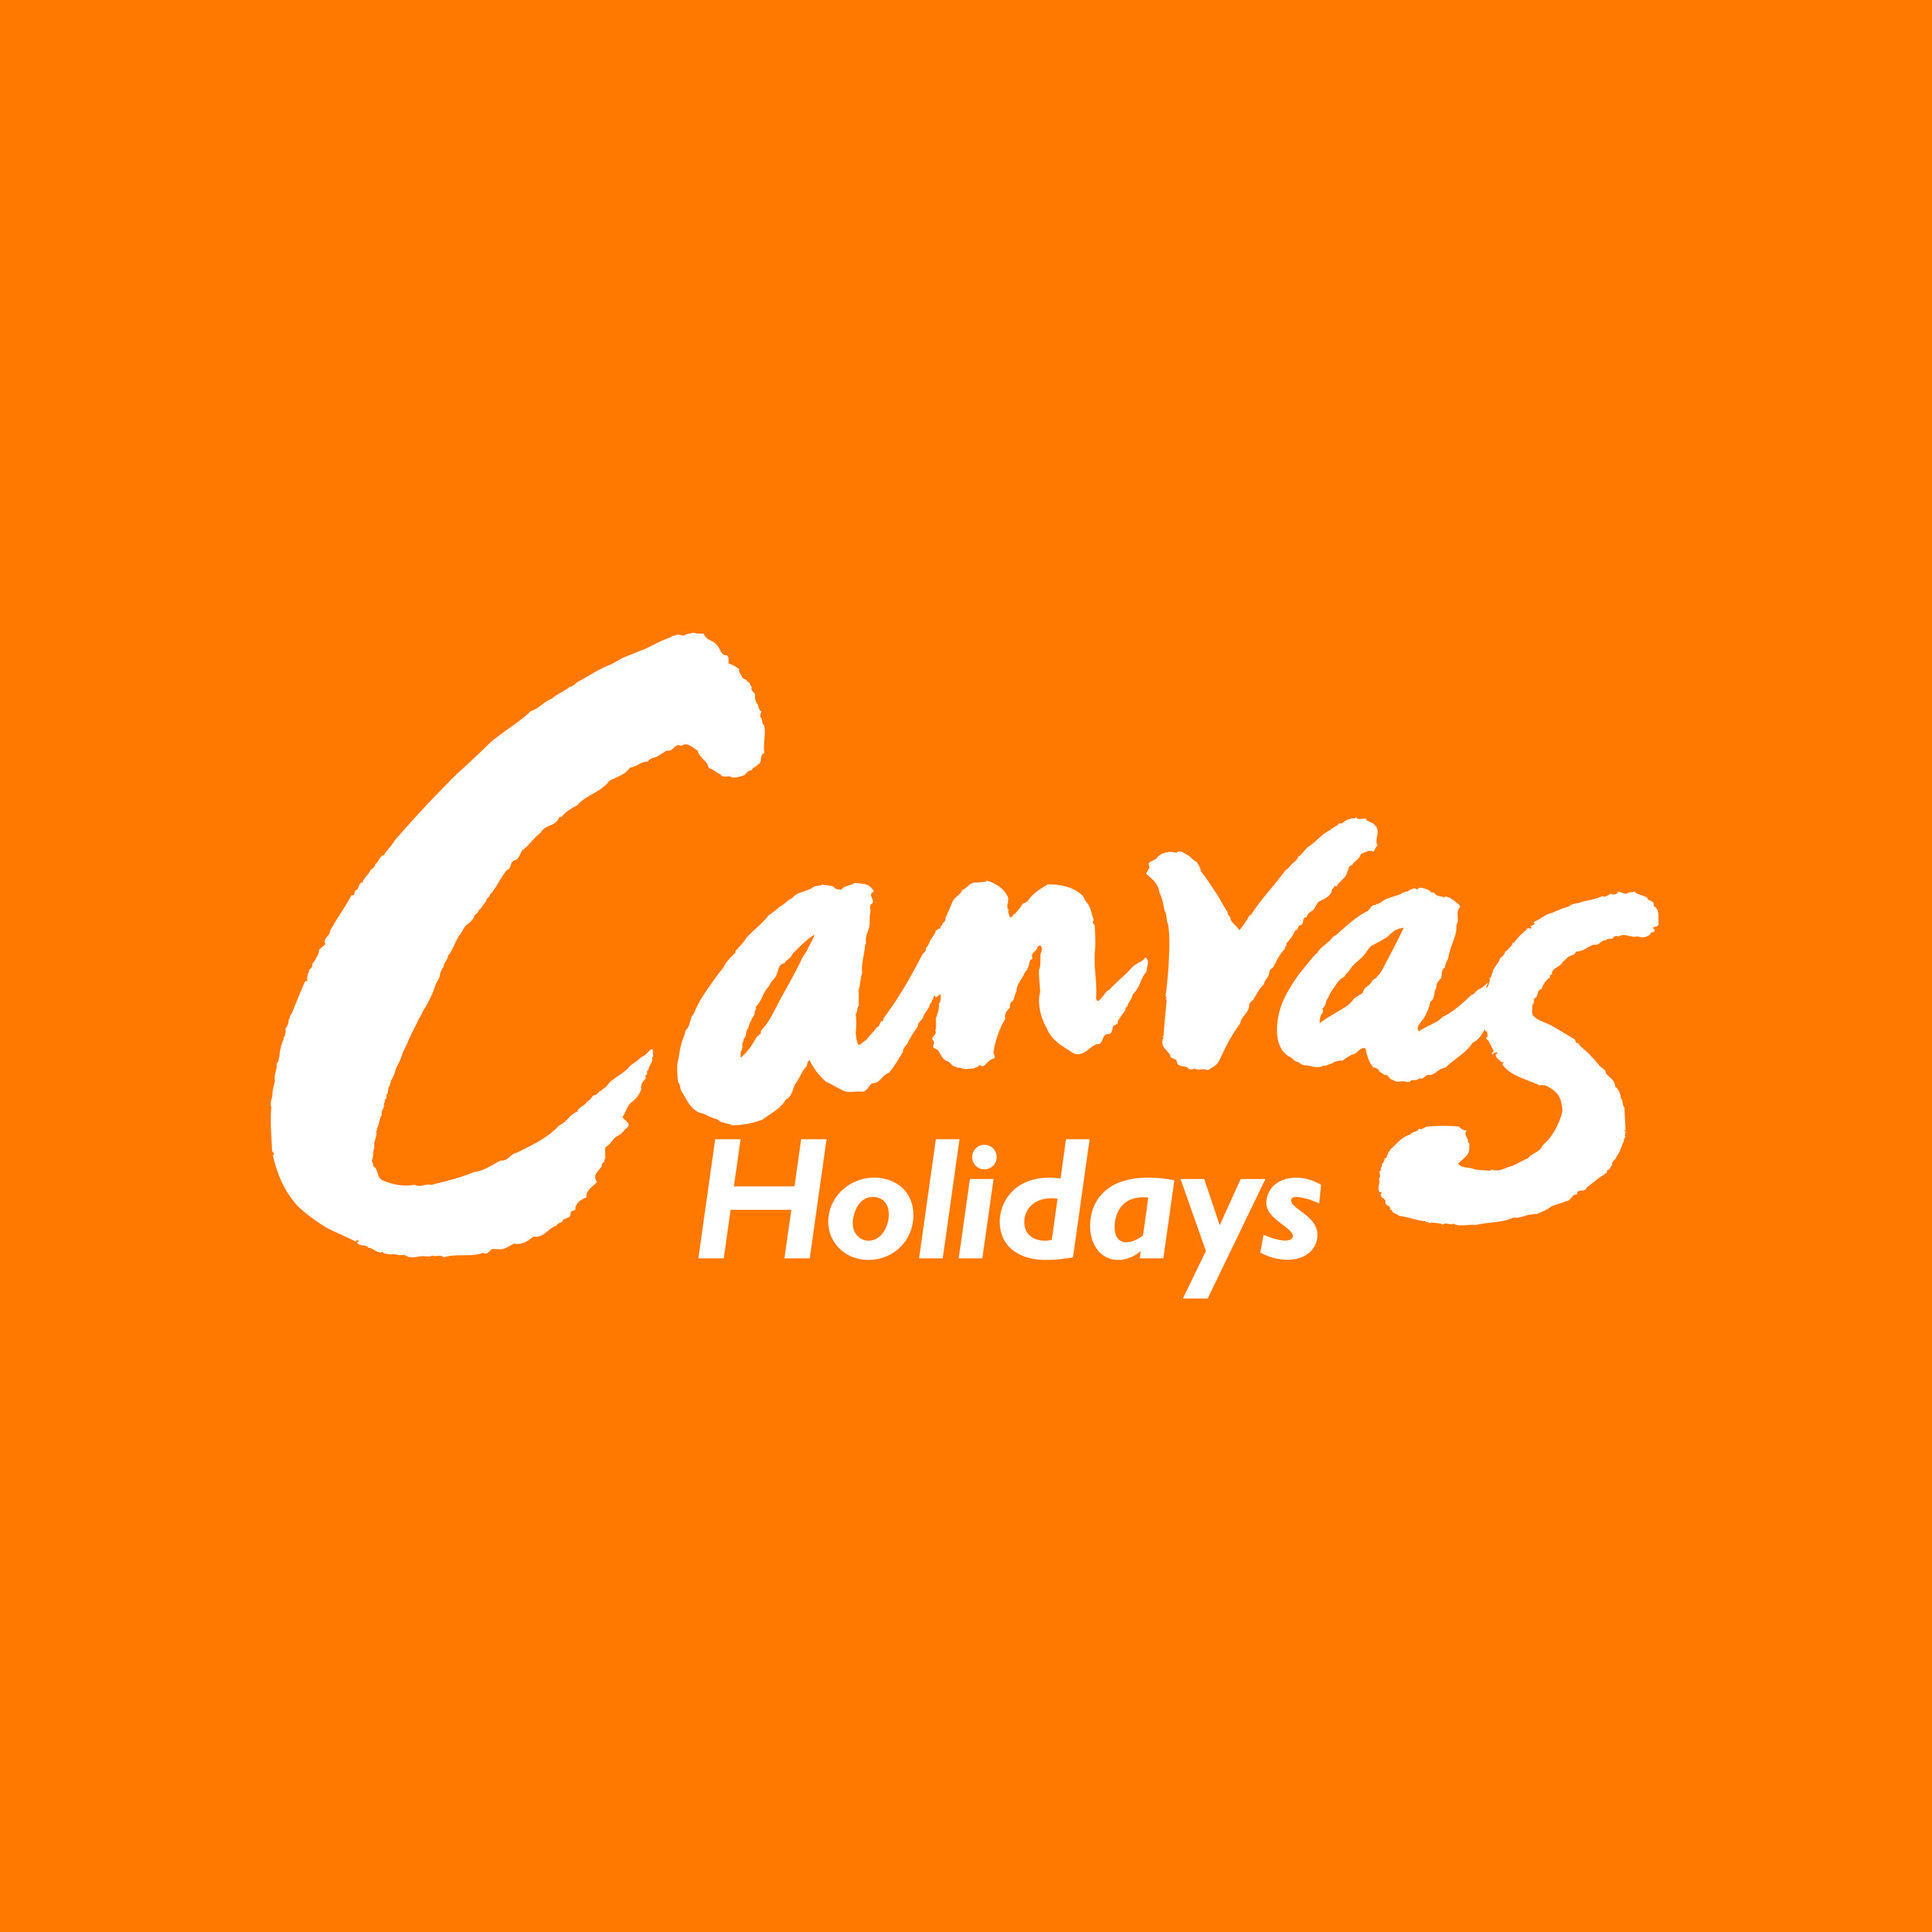 Orange and White Brand Logo - Canvas Holidays white on orange logo